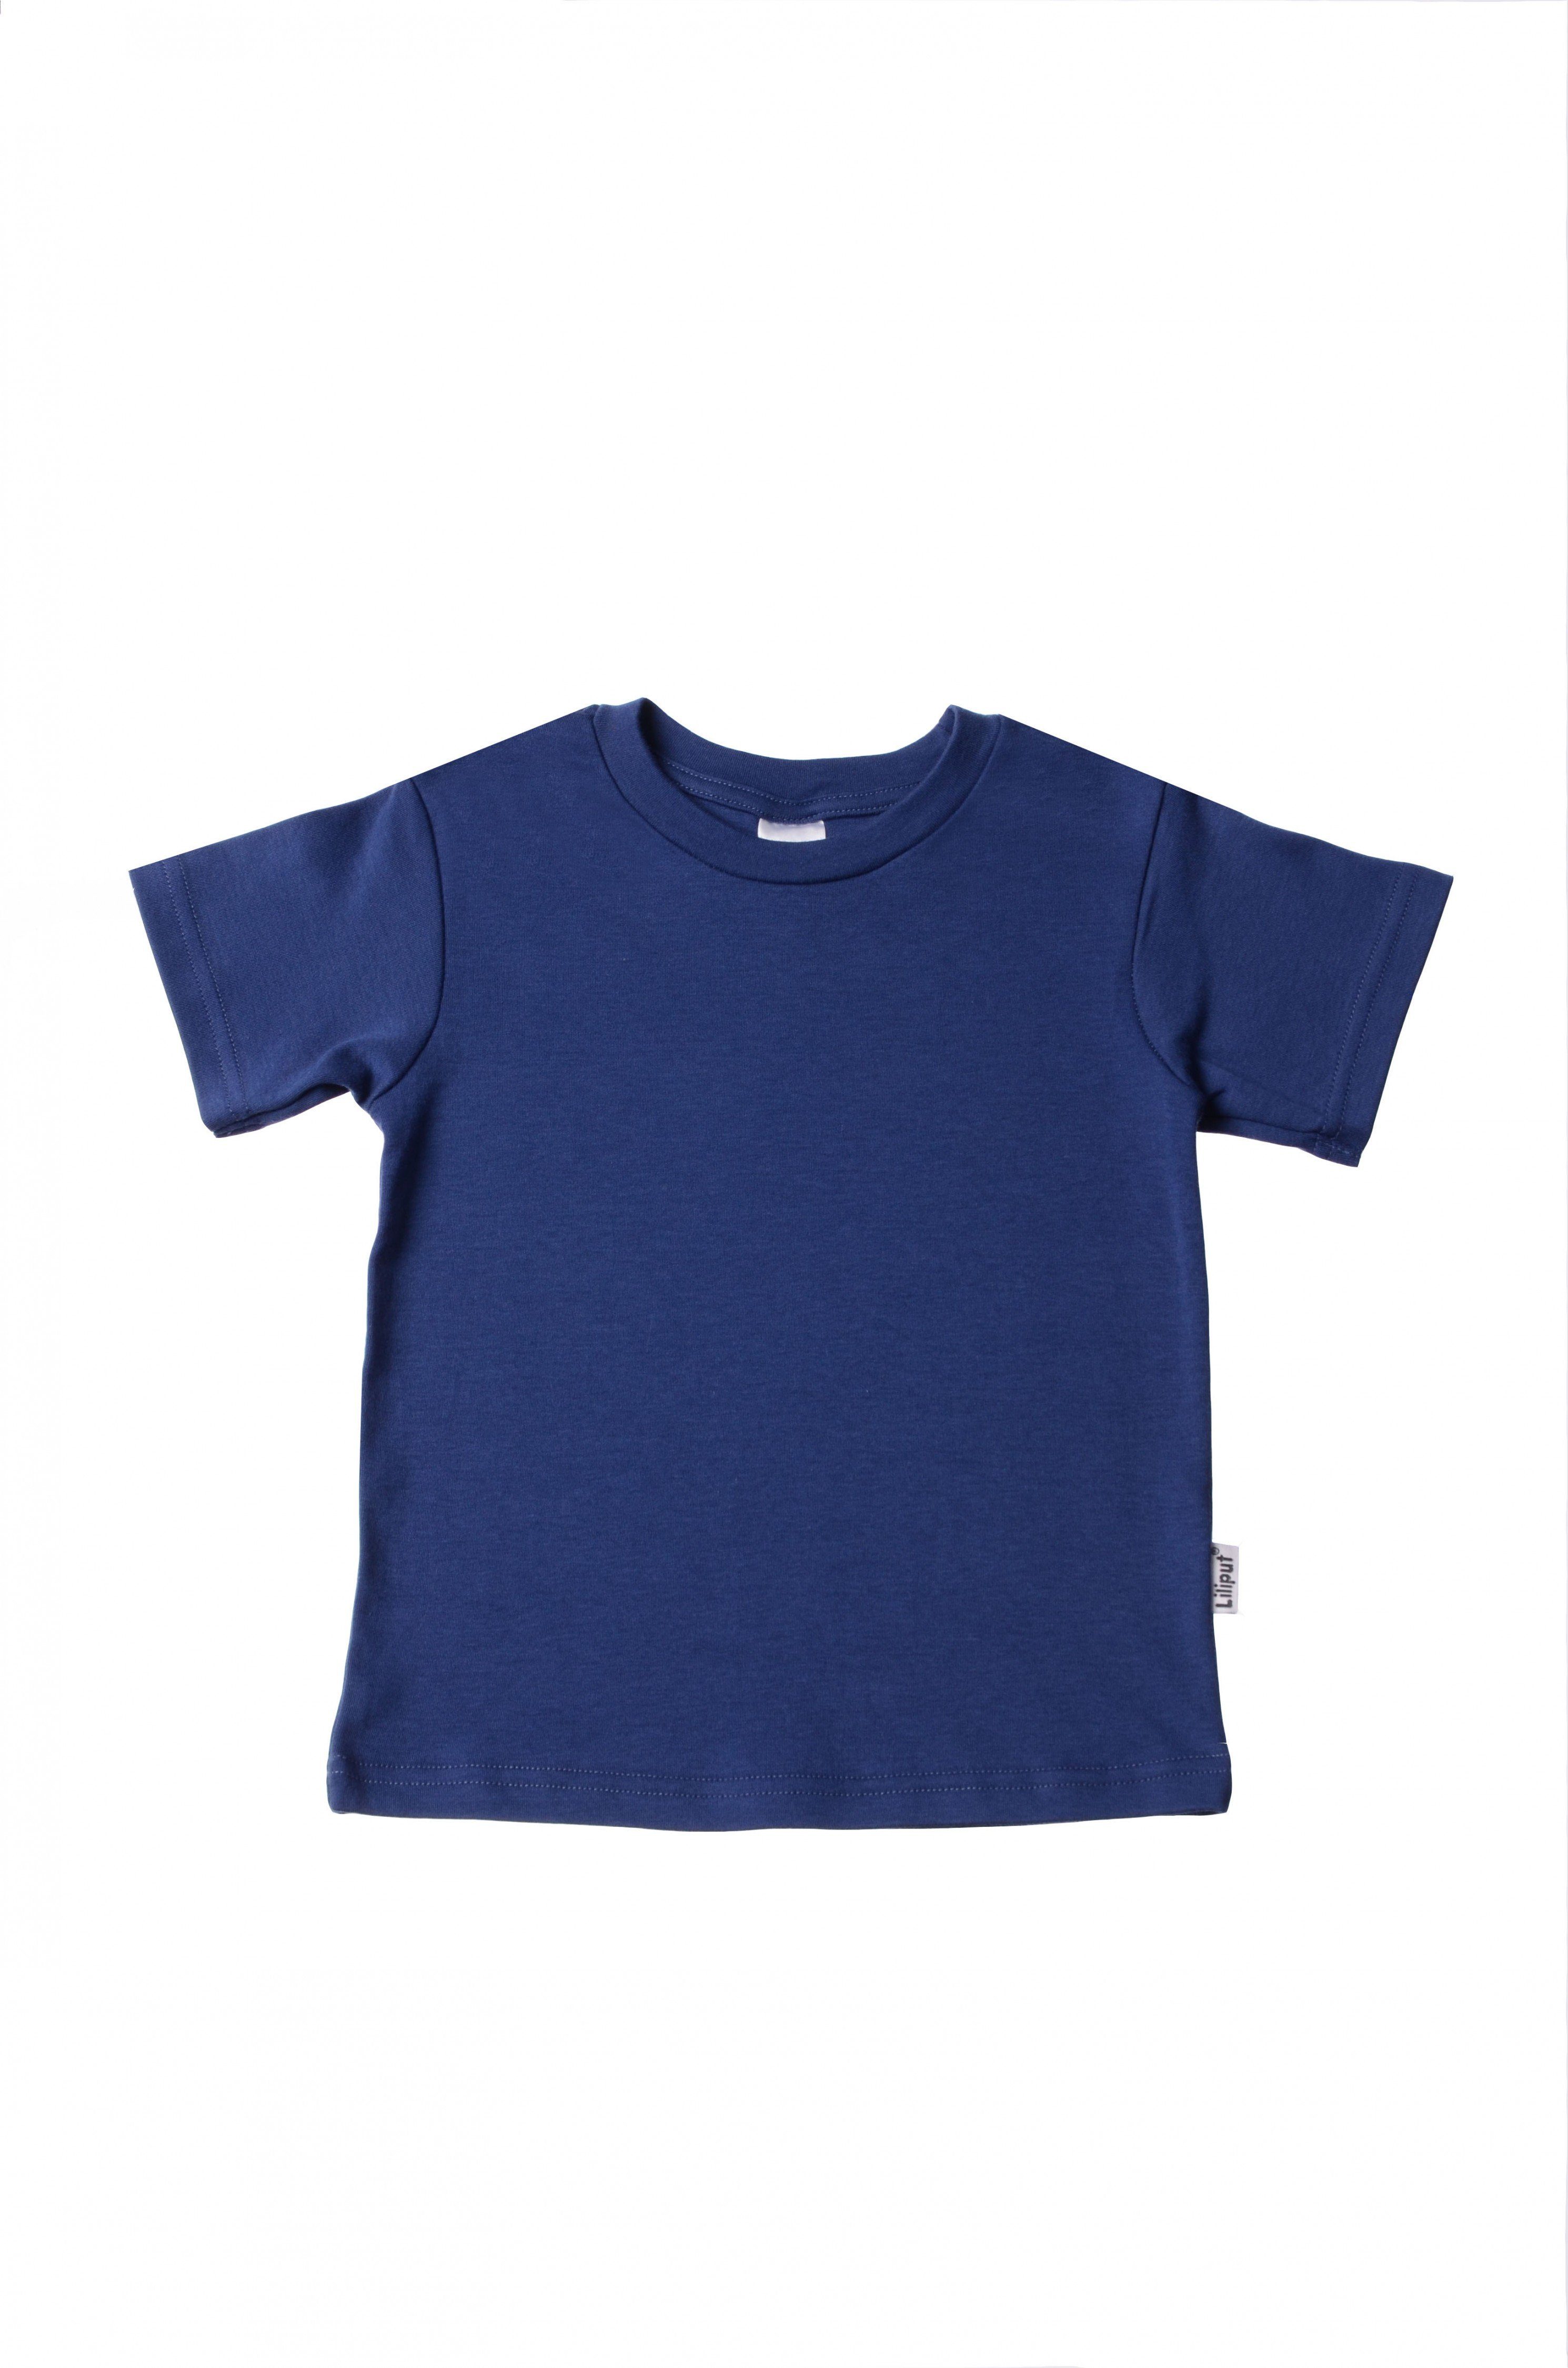 T-Shirt in dunkelblau Design niedlichem Liliput